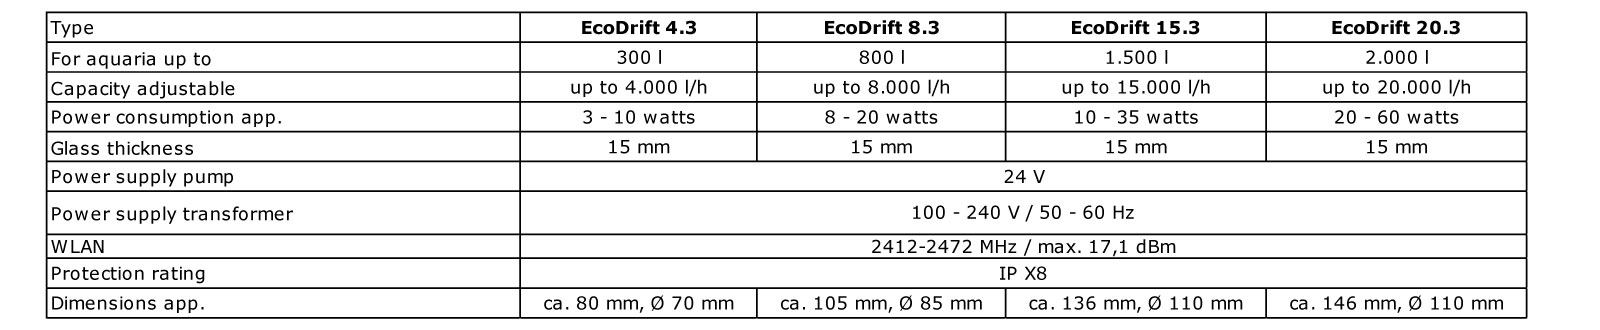 Aqua Medic Controller EcoDrift 8.3 28